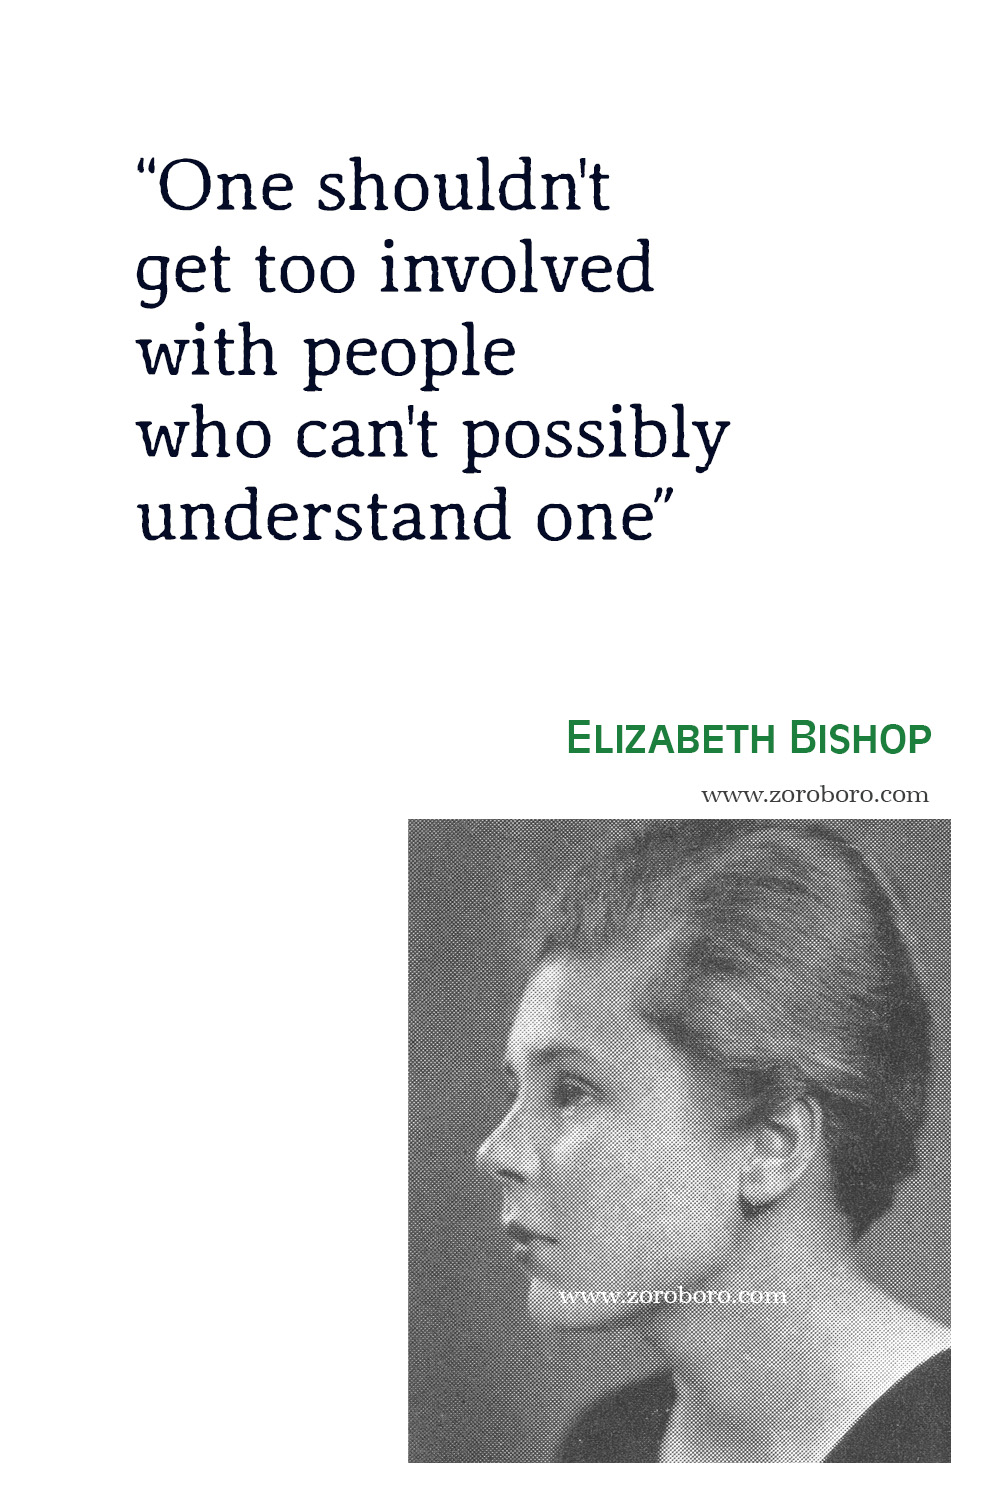 Elizabeth Bishop Quotes, Elizabeth Bishop Poet, Elizabeth Bishop Poetry, Elizabeth Bishop Poems, Elizabeth Bishop Books Quotes, The Complete Poems 1927-1979